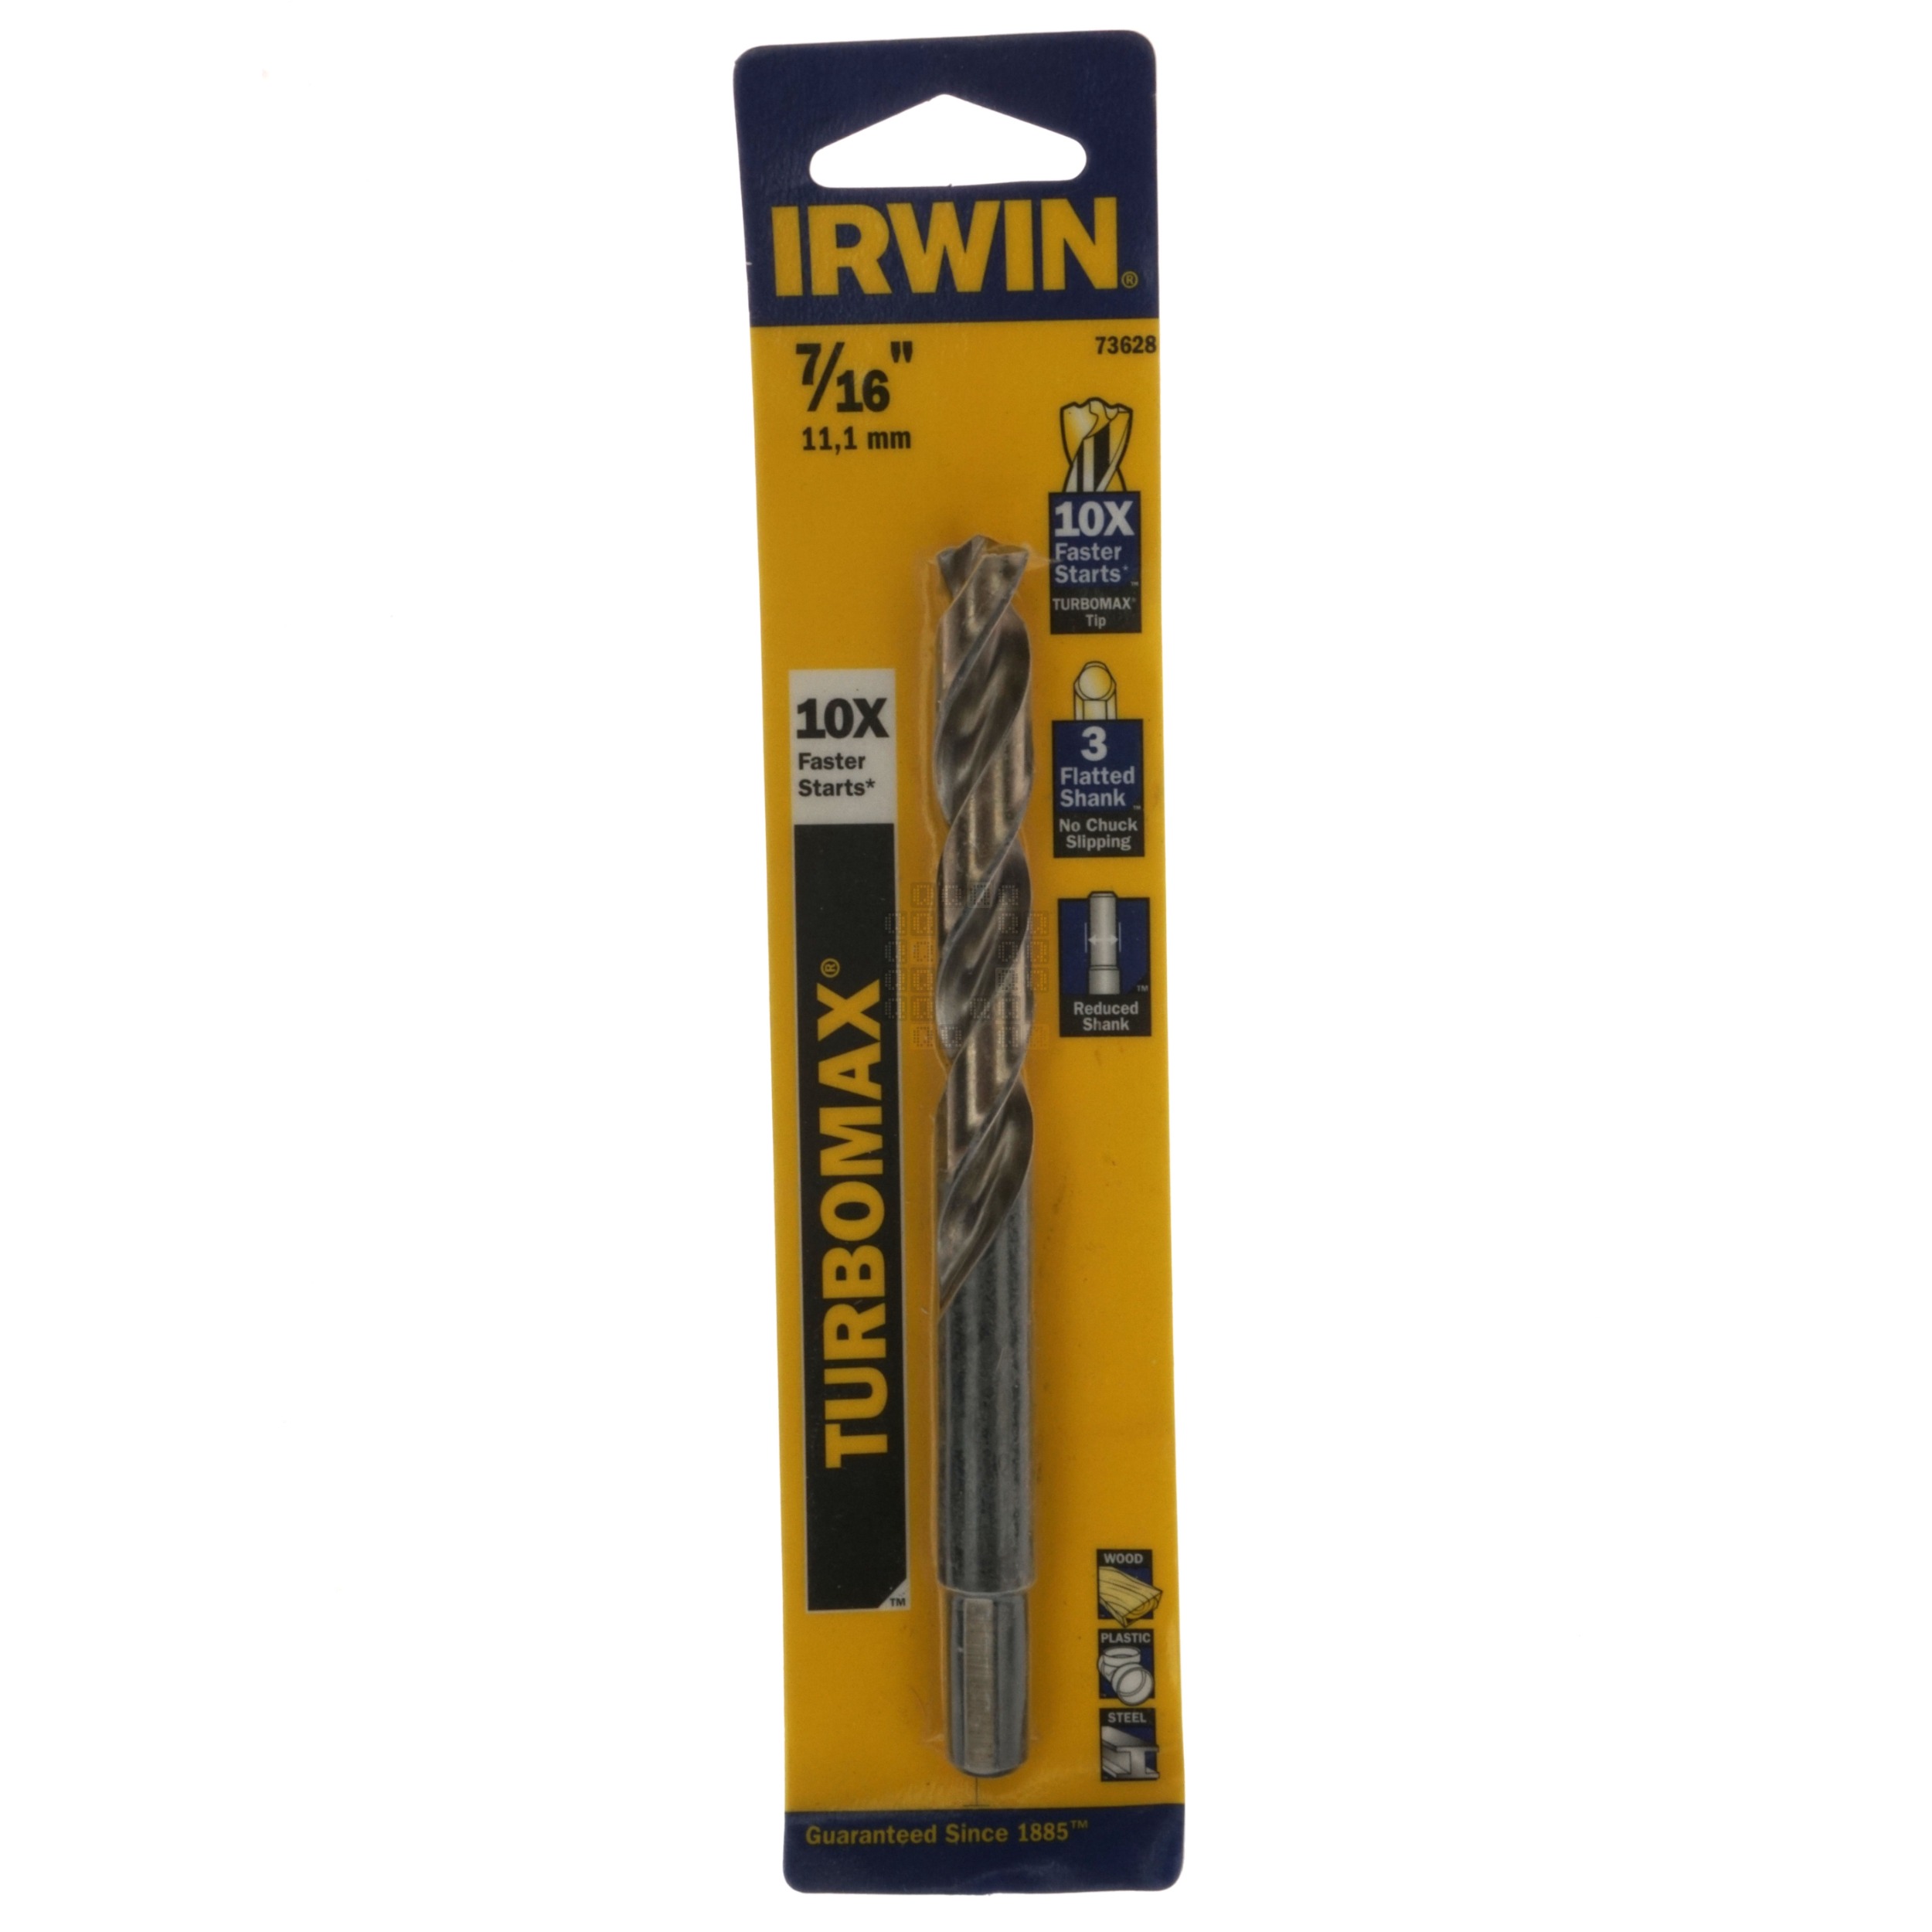 Irwin Industrial Tools 73628 Turbomax 7/16" Reduced Shank Drill Bit